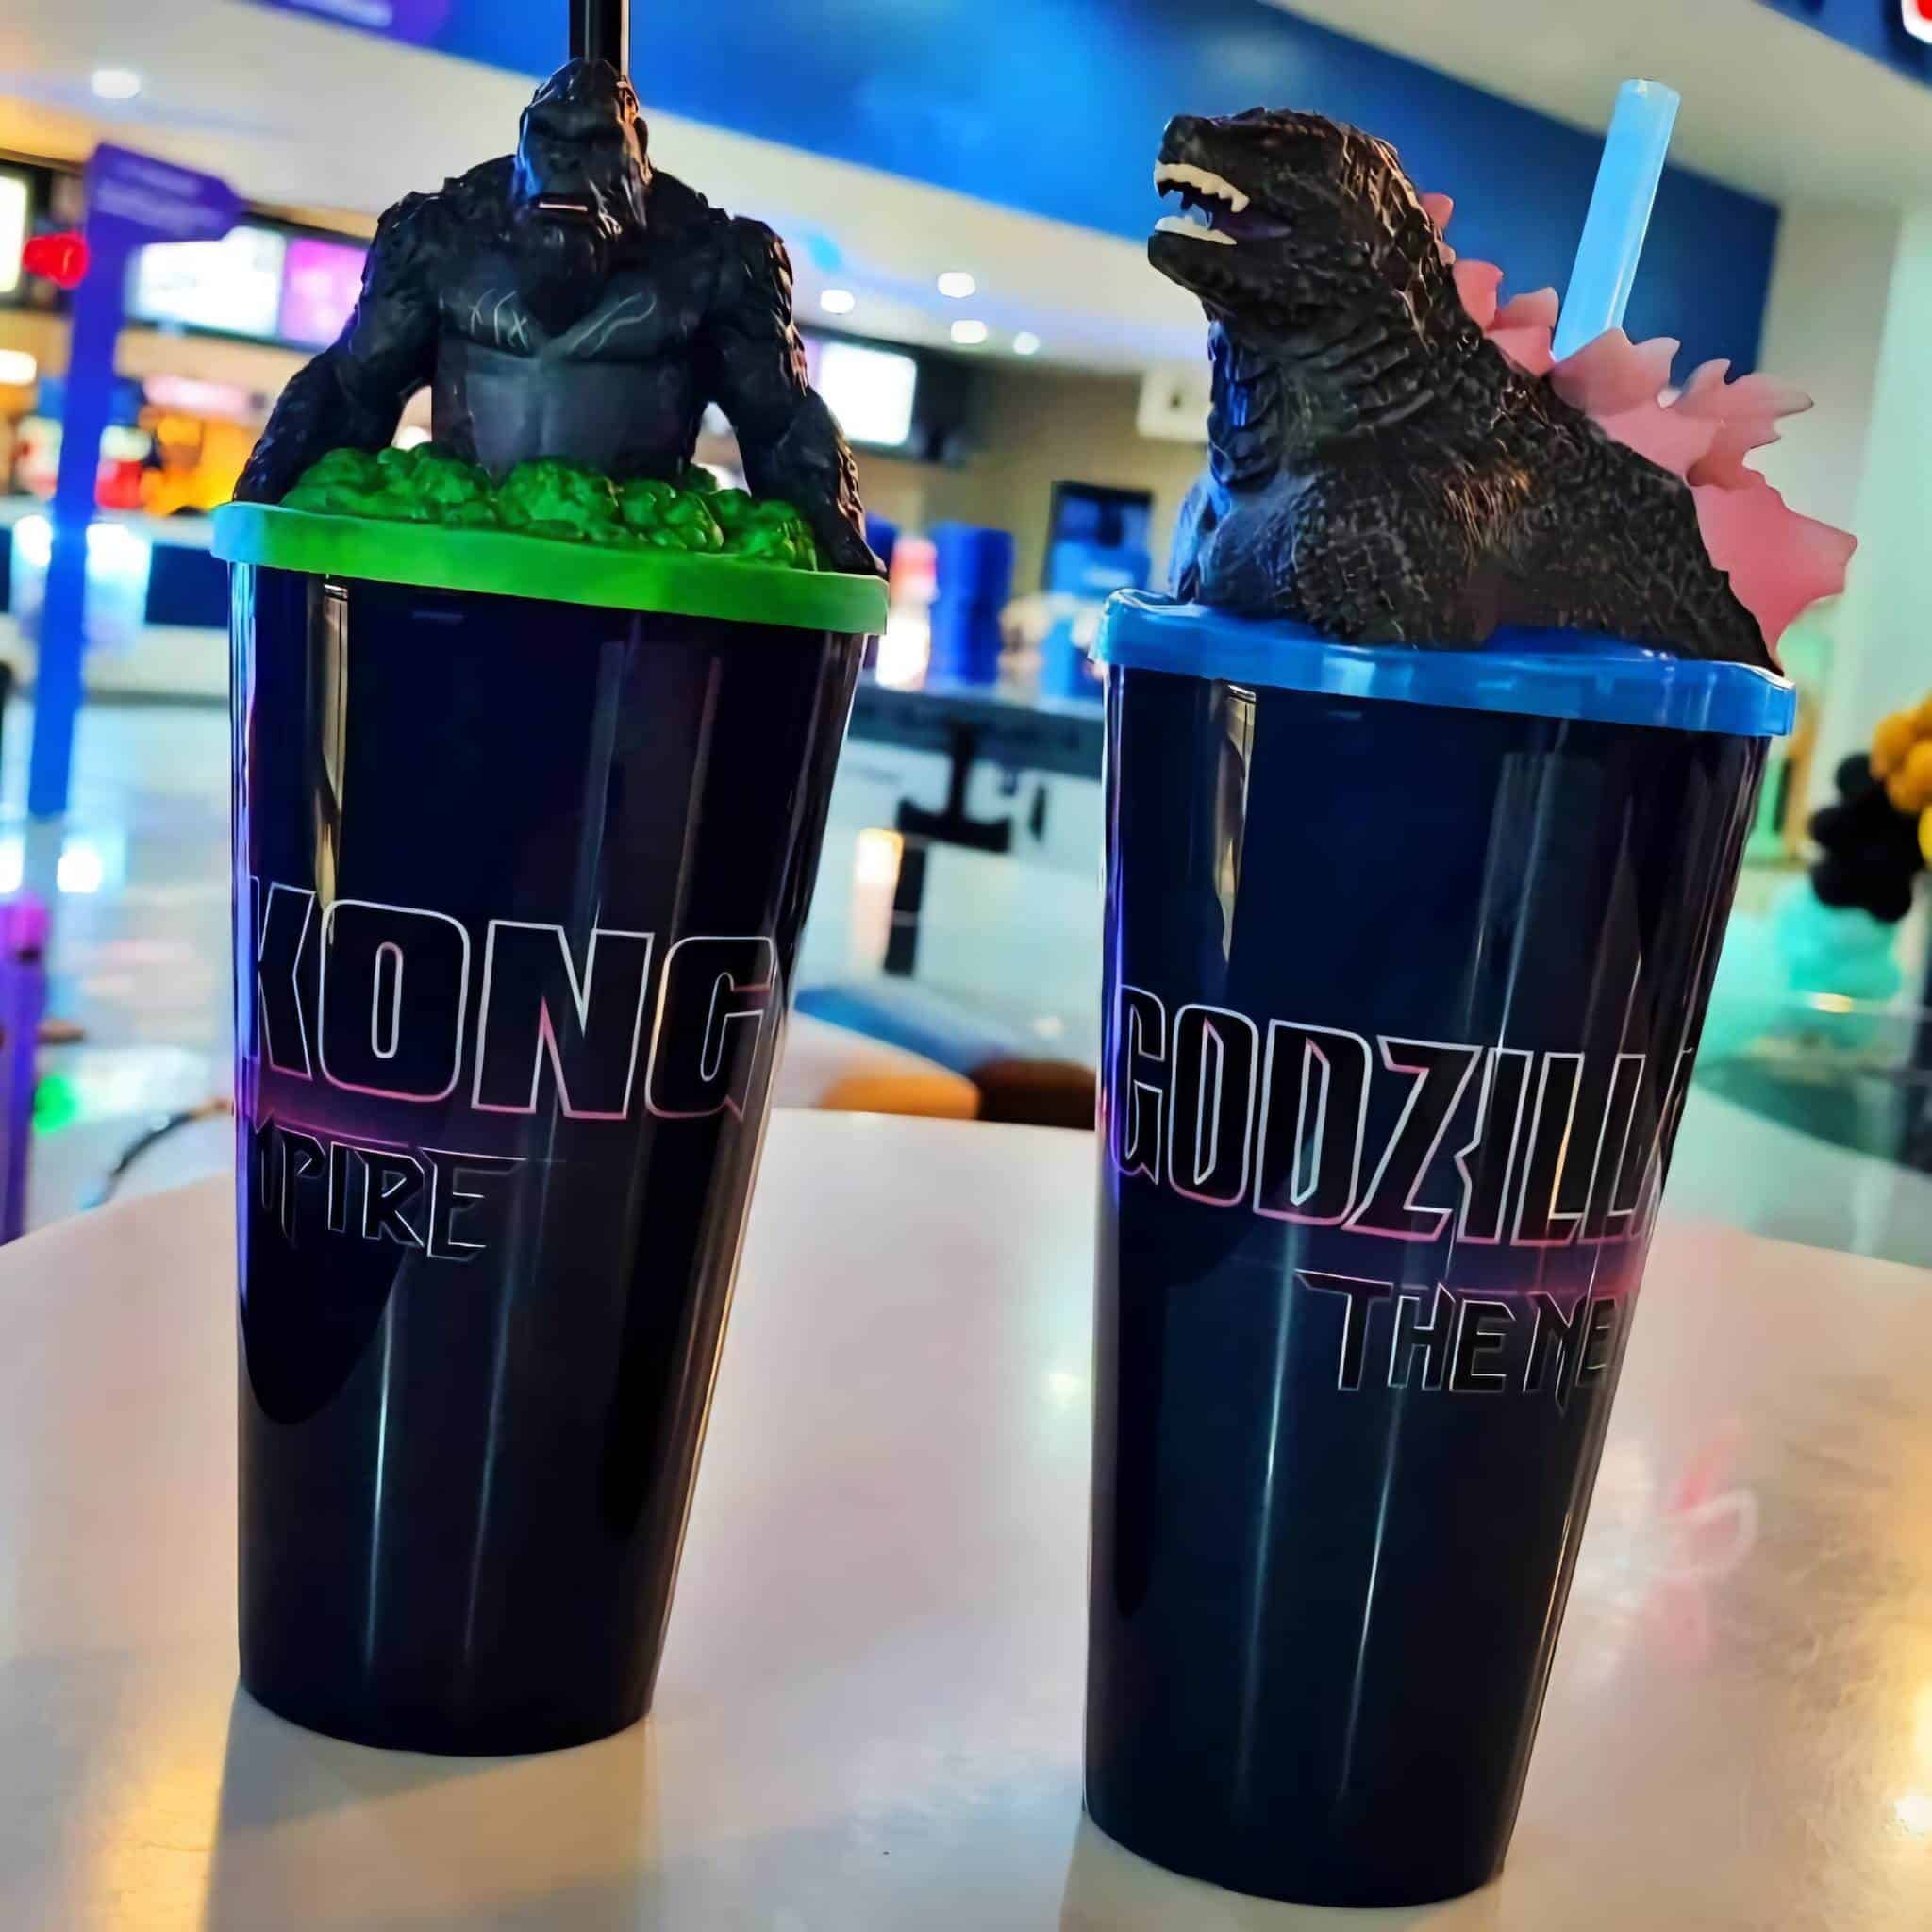 Venta de los vasos de la película de Godzilla y Kong en Cinépolis